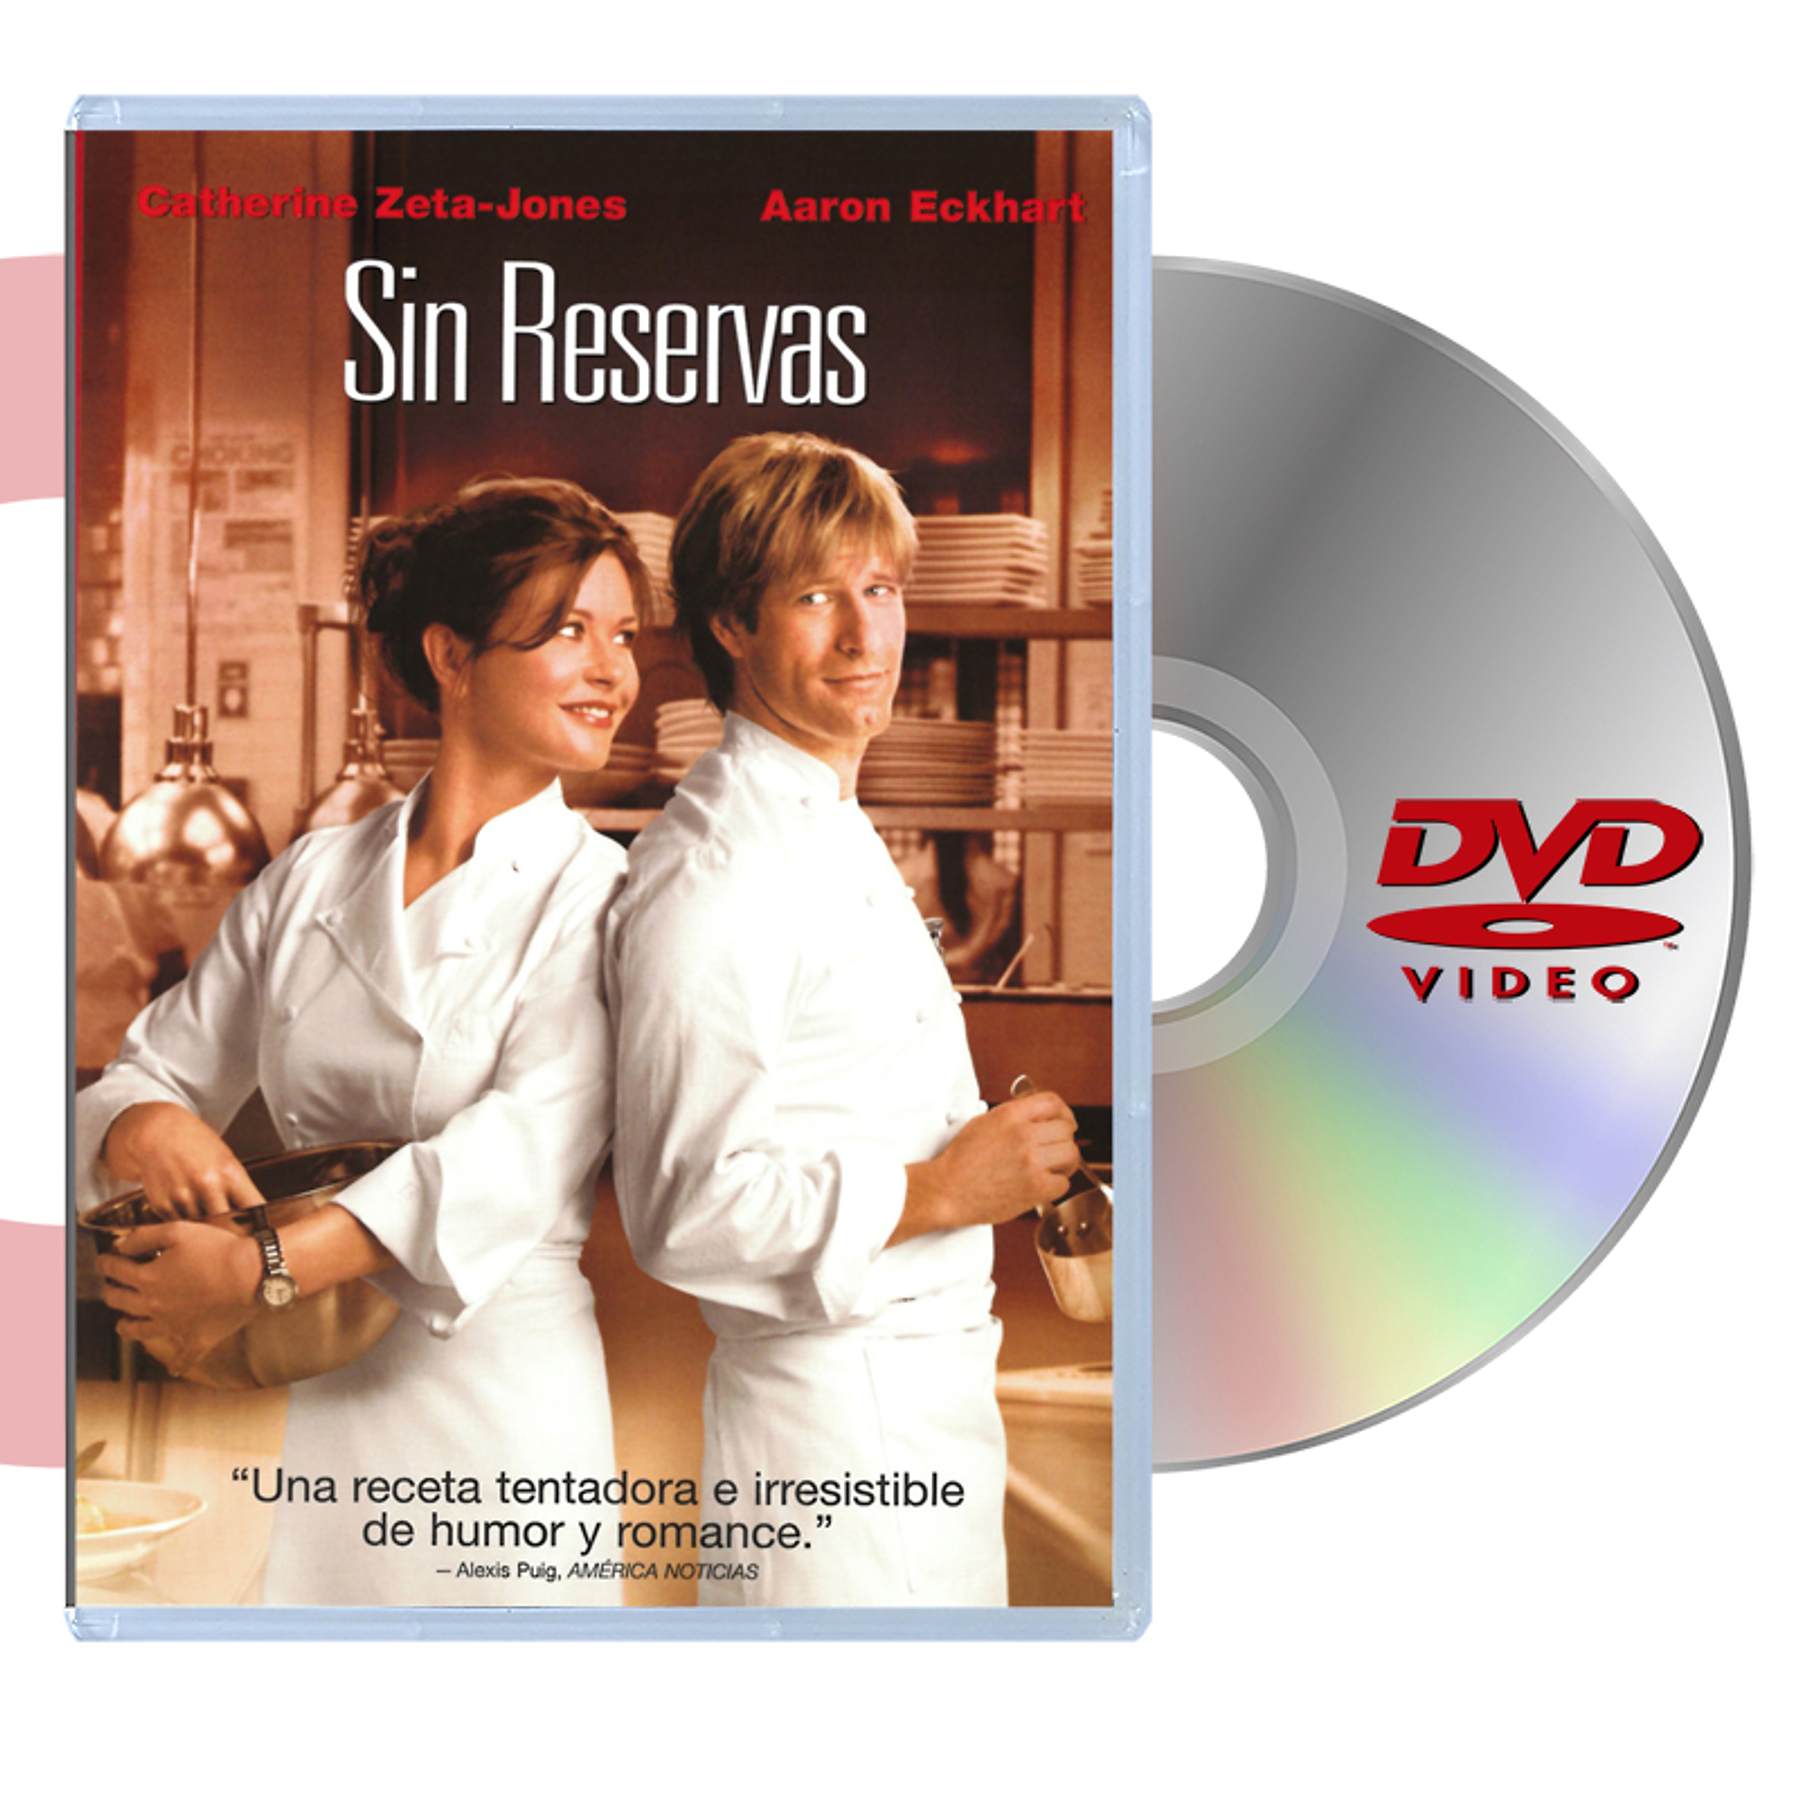 DVD SIN RESERVAS